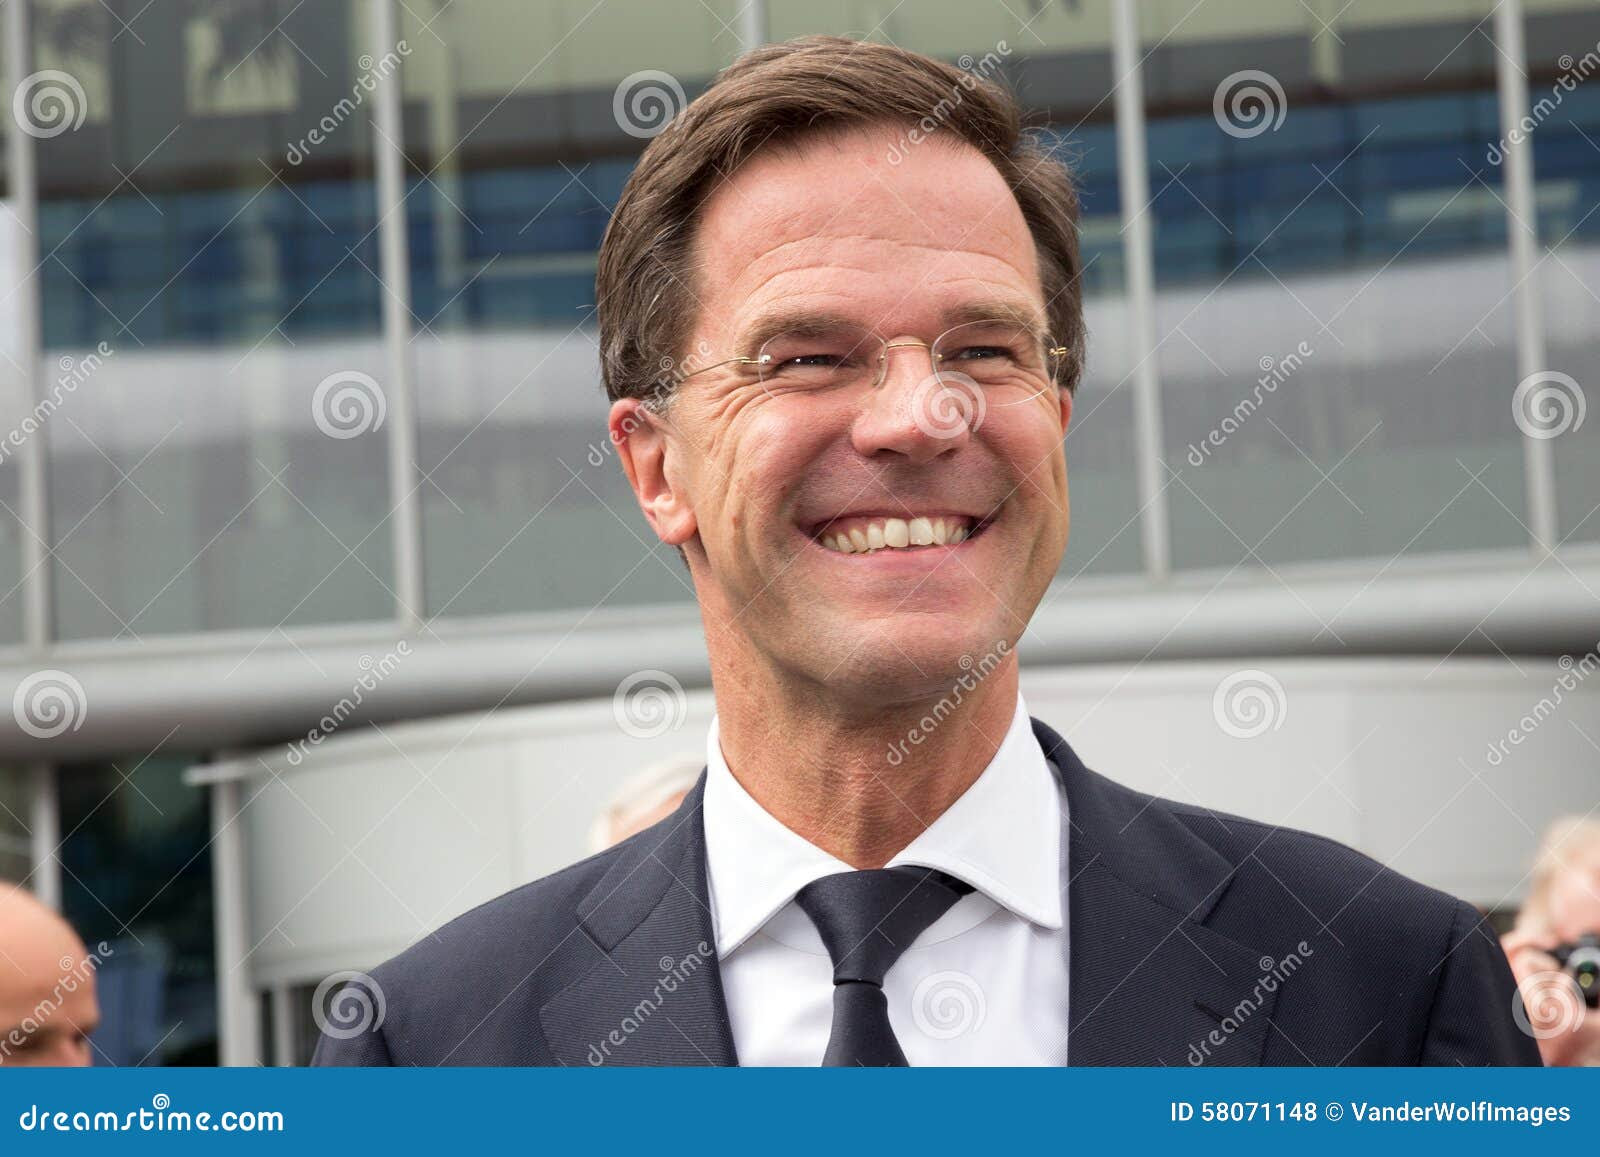 Minister-President Mark Rutte